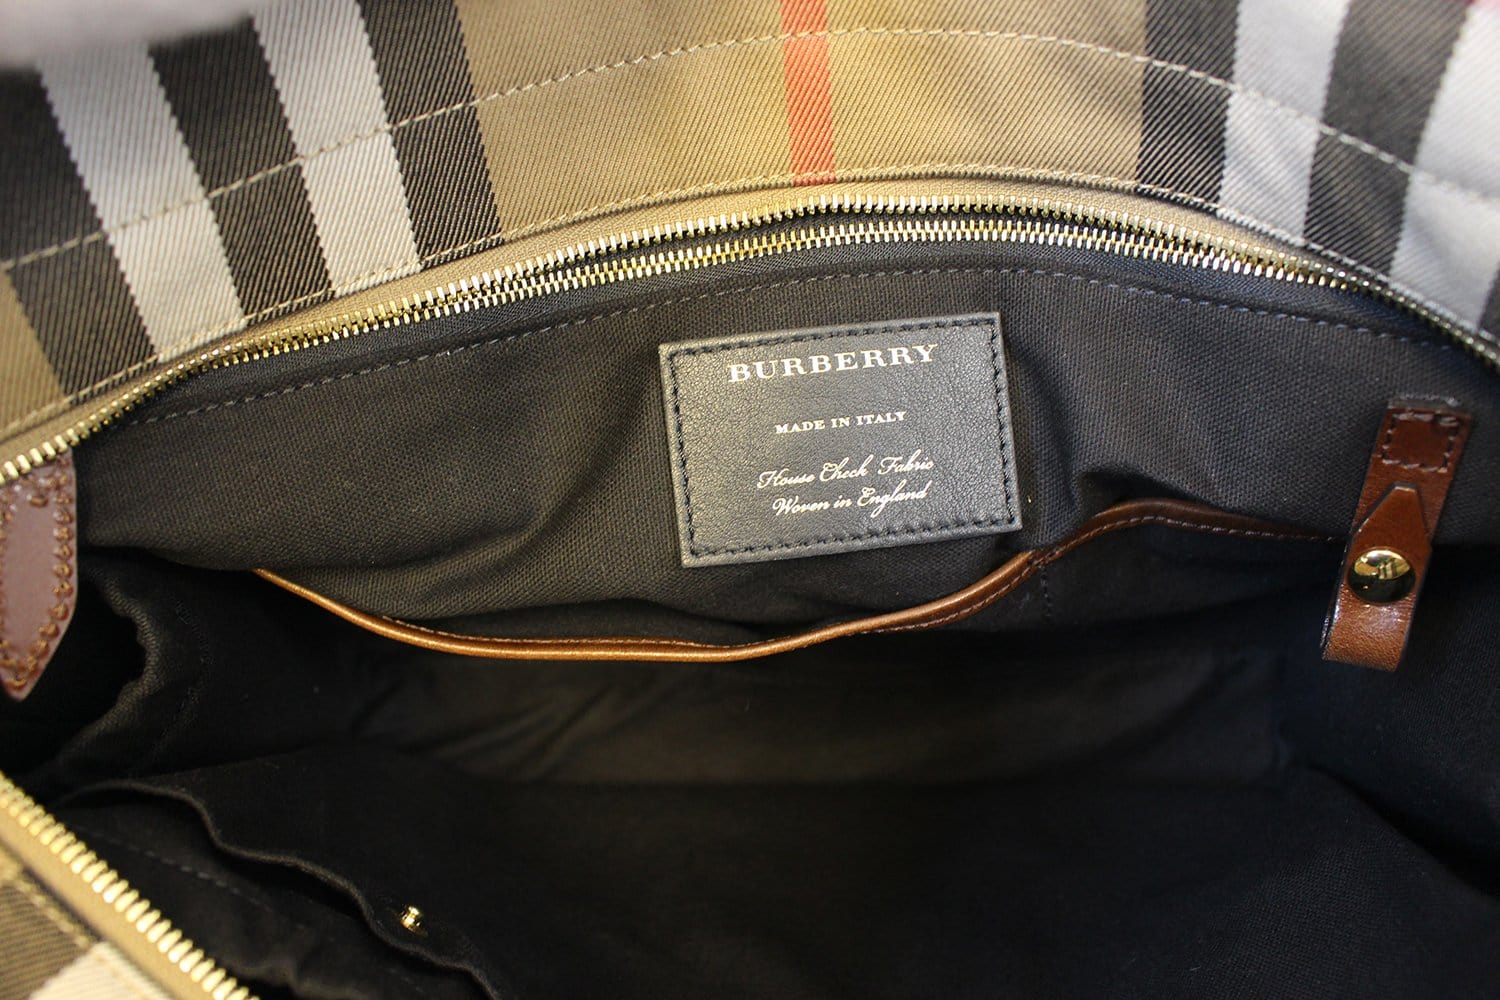 Burberry Handbags, Burberry Purses & Burberry Bag